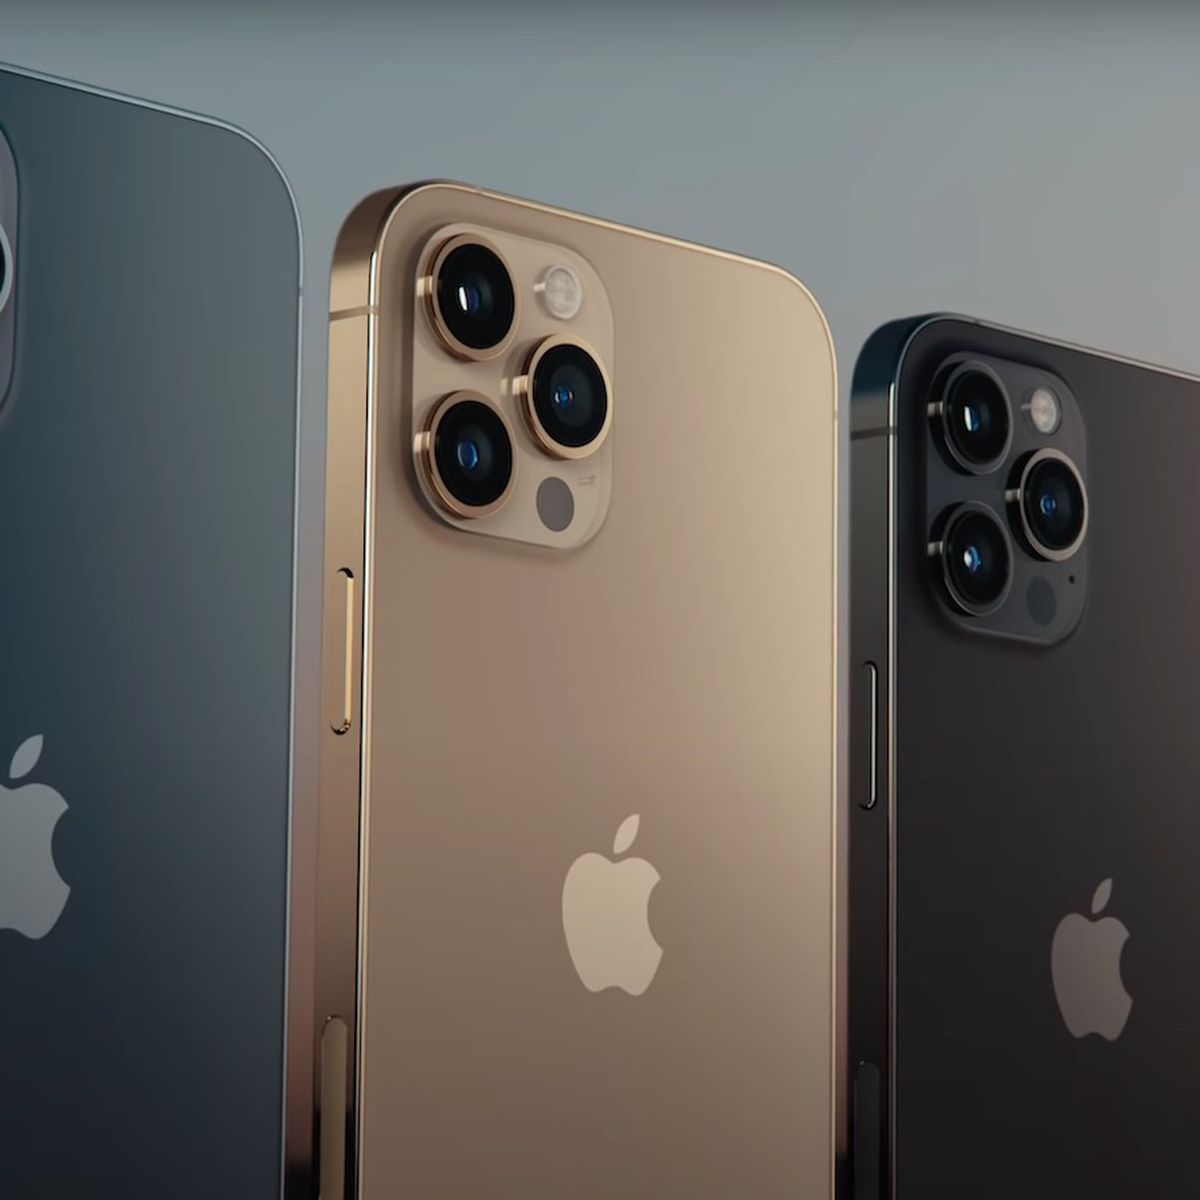 Cùng khám phá chiếc iPhone 12 Pro - một trong những sản phẩm đình đám nhất của Apple trong năm nay với thiết kế đẹp mắt và cấu hình đỉnh cao. Chưa hết, hãy chiêm ngưỡng màn hình OLED cực kỳ sắc nét, màu sắc sống động và độ tương phản tuyệt vời ngay trên chiếc điện thoại của bạn.